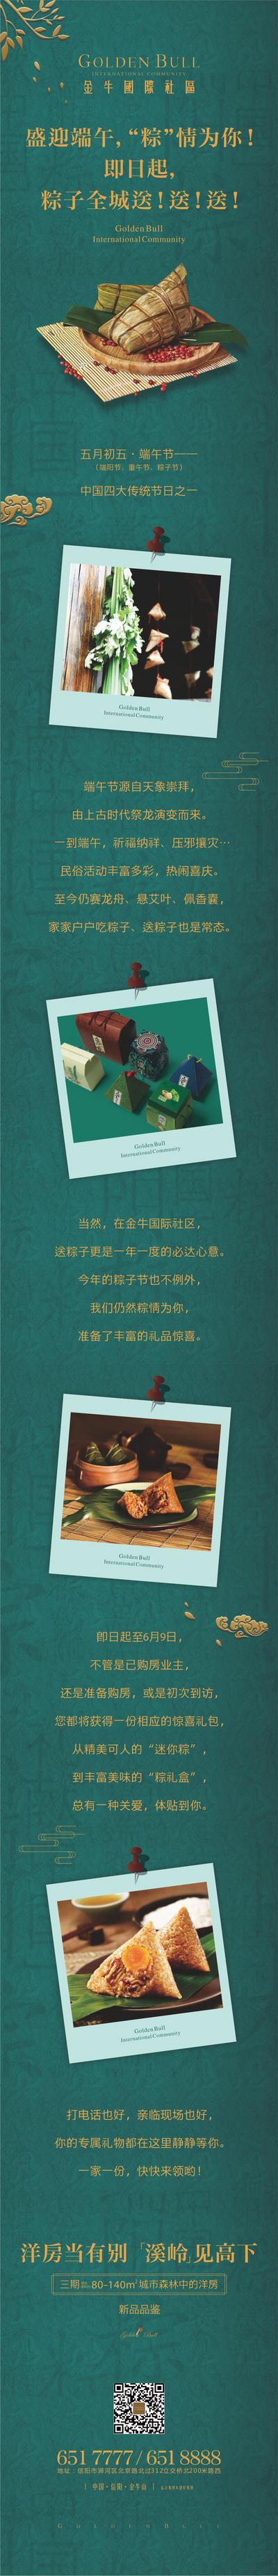 南门网 专题设计 长图 房地产 端午节 中国传统节日 送粽子 